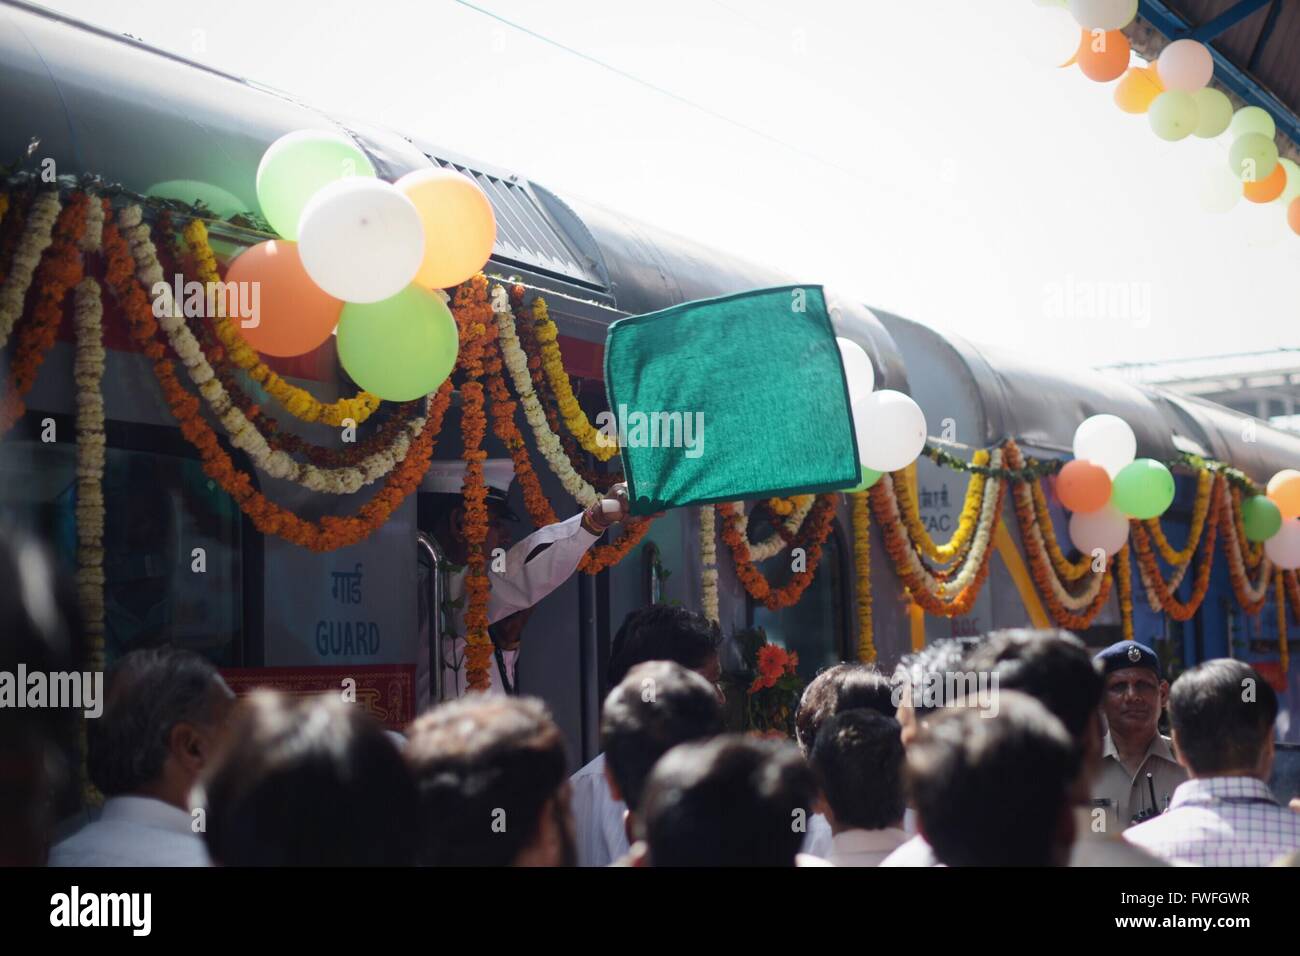 Neu-Delhi, Indien. 5. April 2016. Ein Dirigent Wellen eine grüne Flagge als das Signal zum ersten gehen des indischen ersten semi-Hochgeschwindigkeitszuges "Gatimaan Express" am Nizamuddin Bahnhof in New Delhi, der Hauptstadt von Indien, am 5. April 2016 laufen. Des Landes ersten semi-high-Speed-Zug, der die Geschwindigkeit von 160 km/h berühren würde sein Debüt von Neu-Delhi nach Agra Dienstag. Die Fahrzeit für die rund 200km würde auf 110 Minuten laut lokalen Medien reduziert werden. Bildnachweis: Bi Xiaoyang/Xinhua/Alamy Live-Nachrichten Stockfoto